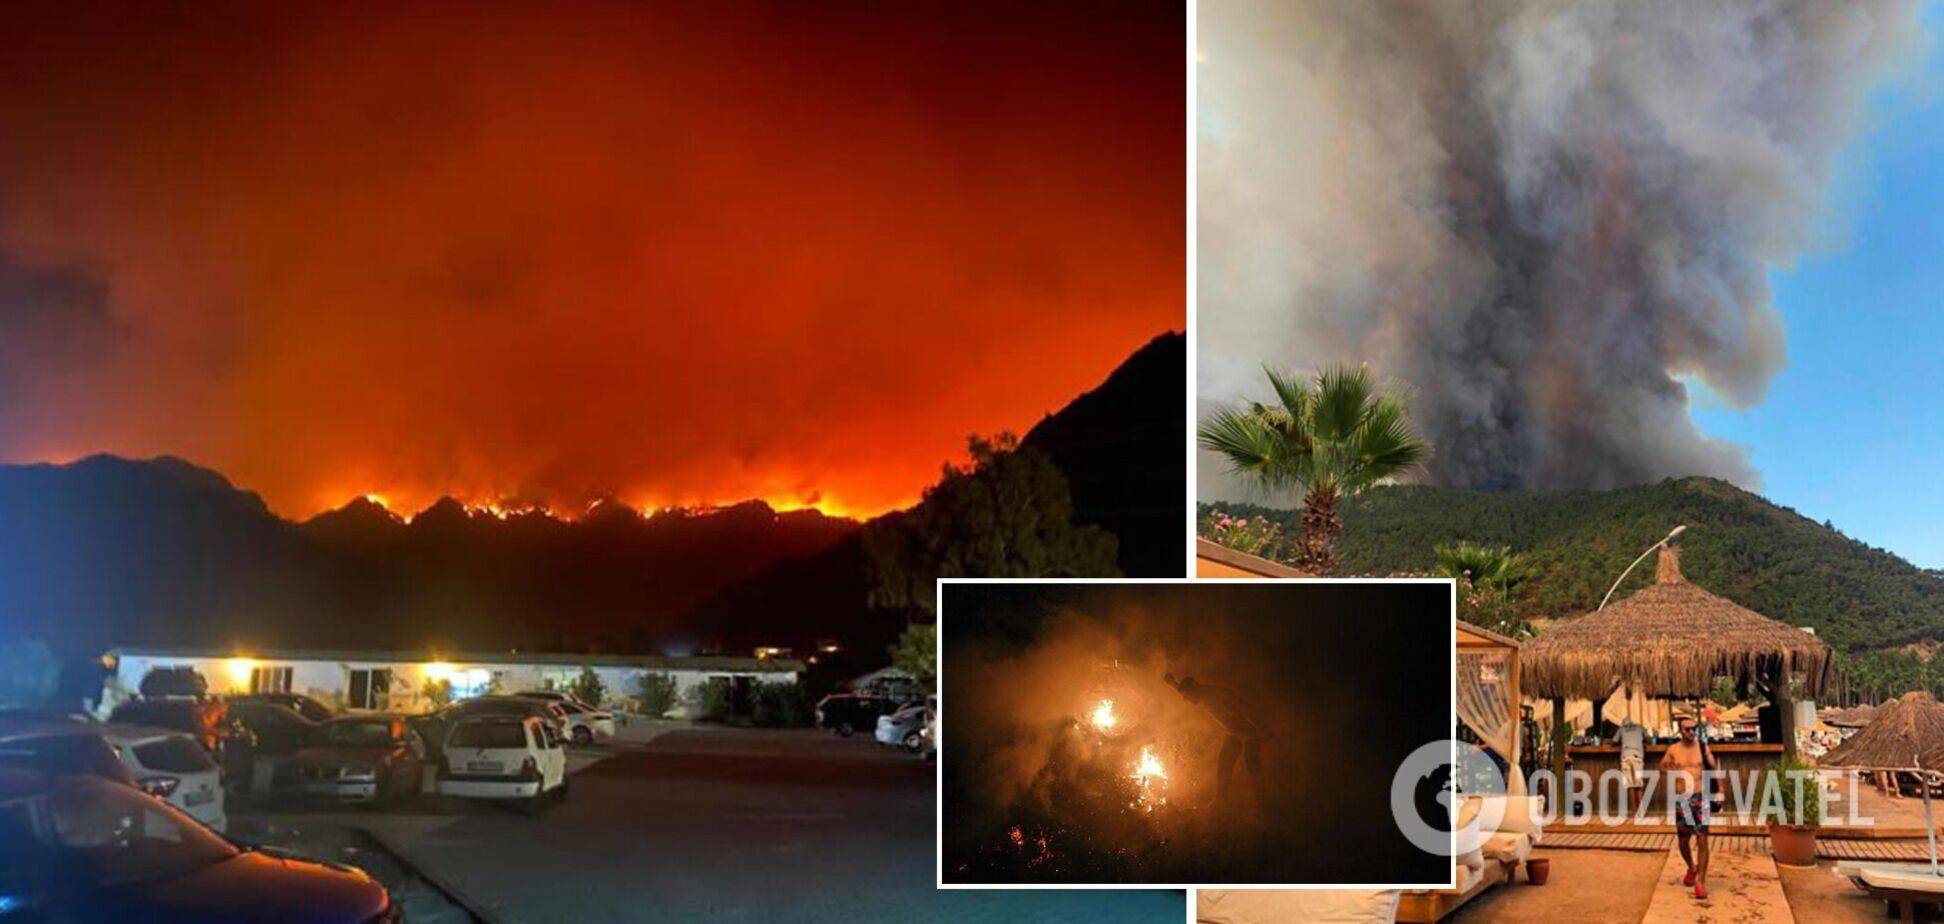 У Туреччині через масштабні пожежі евакуювали туристів: дерева перетворювалися на попіл, згоріли будинки. Фото і відео